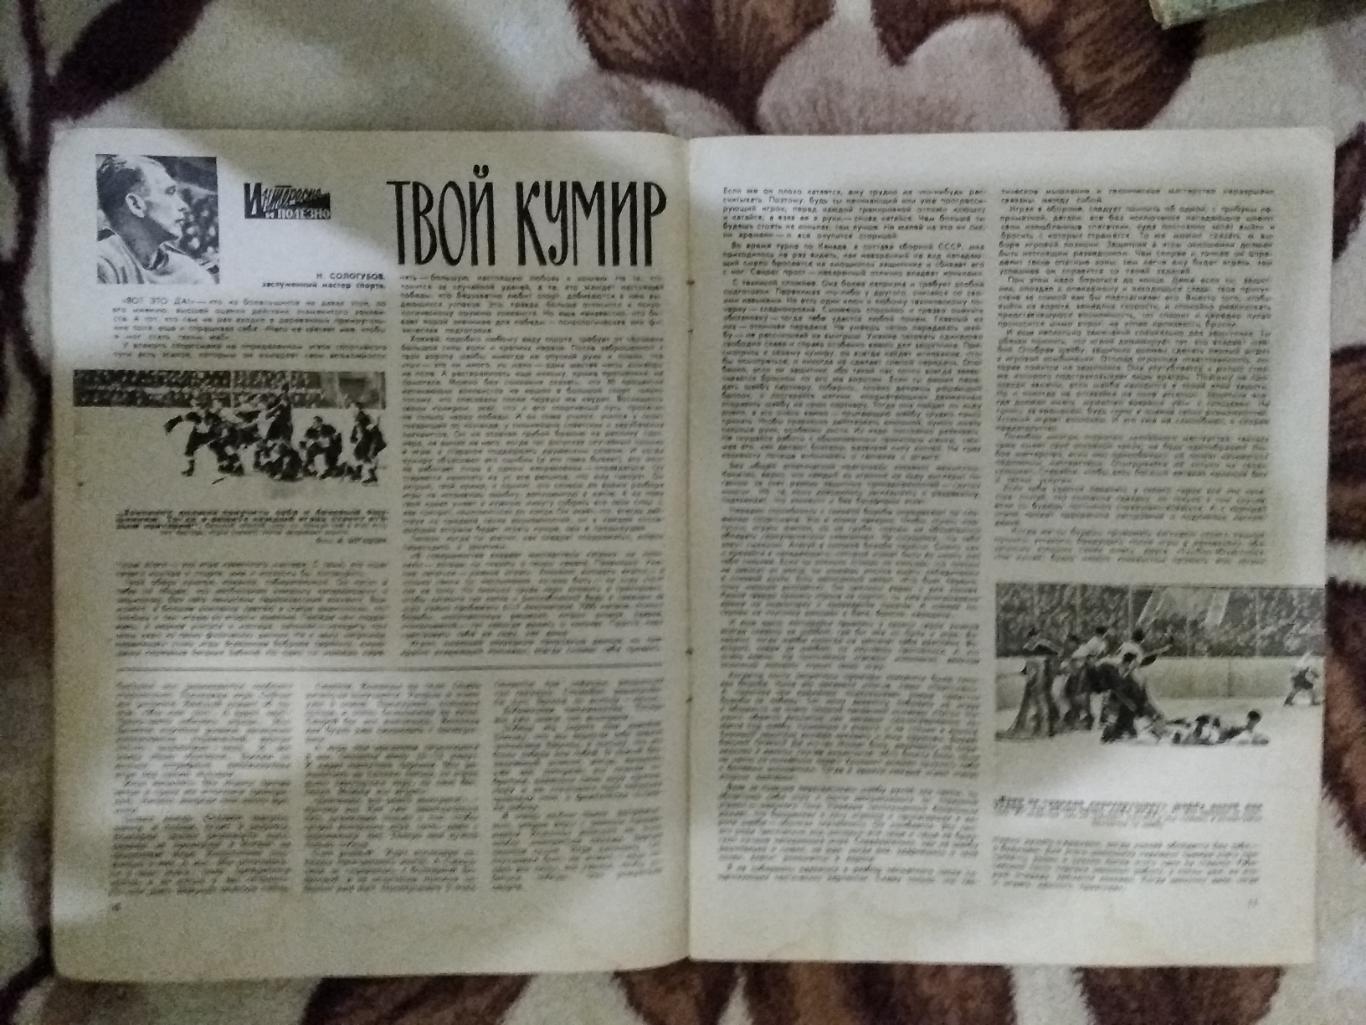 Журнал.Физкультура и спорт № 2 1961 г. (ФиС). 2